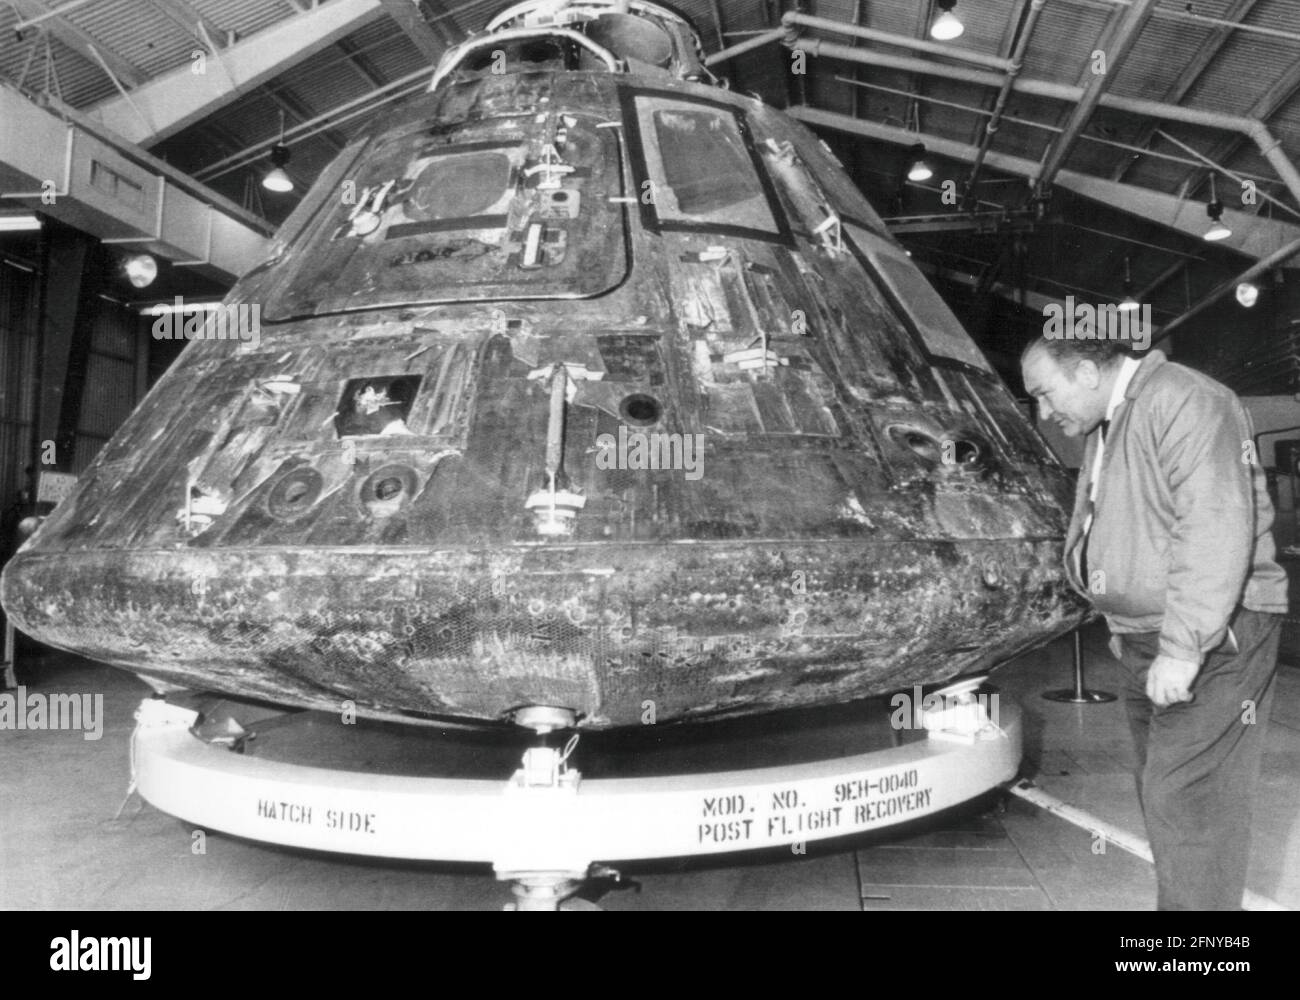 Astronautique, Apollo 13, module d'atterrissage, sous la surveillance de Jim Michaels, 1970, 1970, 70s, 20e siècle, INFO-AUTORISATION-DROITS-SUPPLÉMENTAIRES-NON-DISPONIBLE Banque D'Images